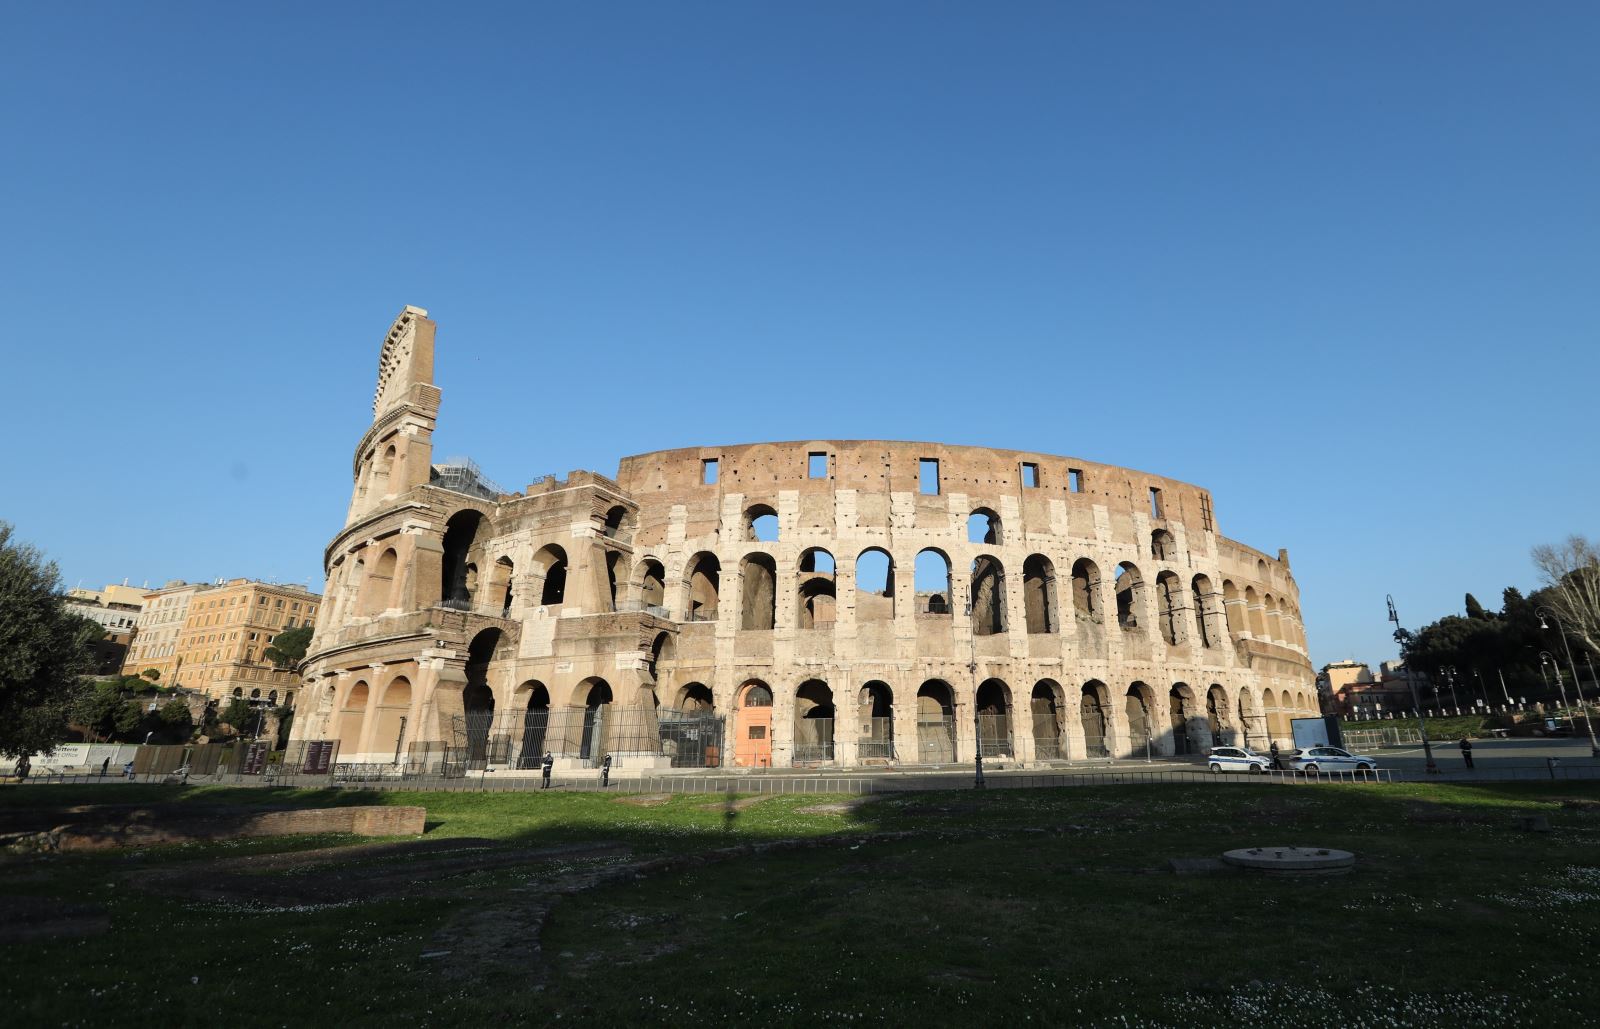 Đấu trường La Mã tại Rome, Italy, vắng bóng khách du lịch ngày 16/3/2020 trong bối cảnh dịch COVID-19 lan rộng